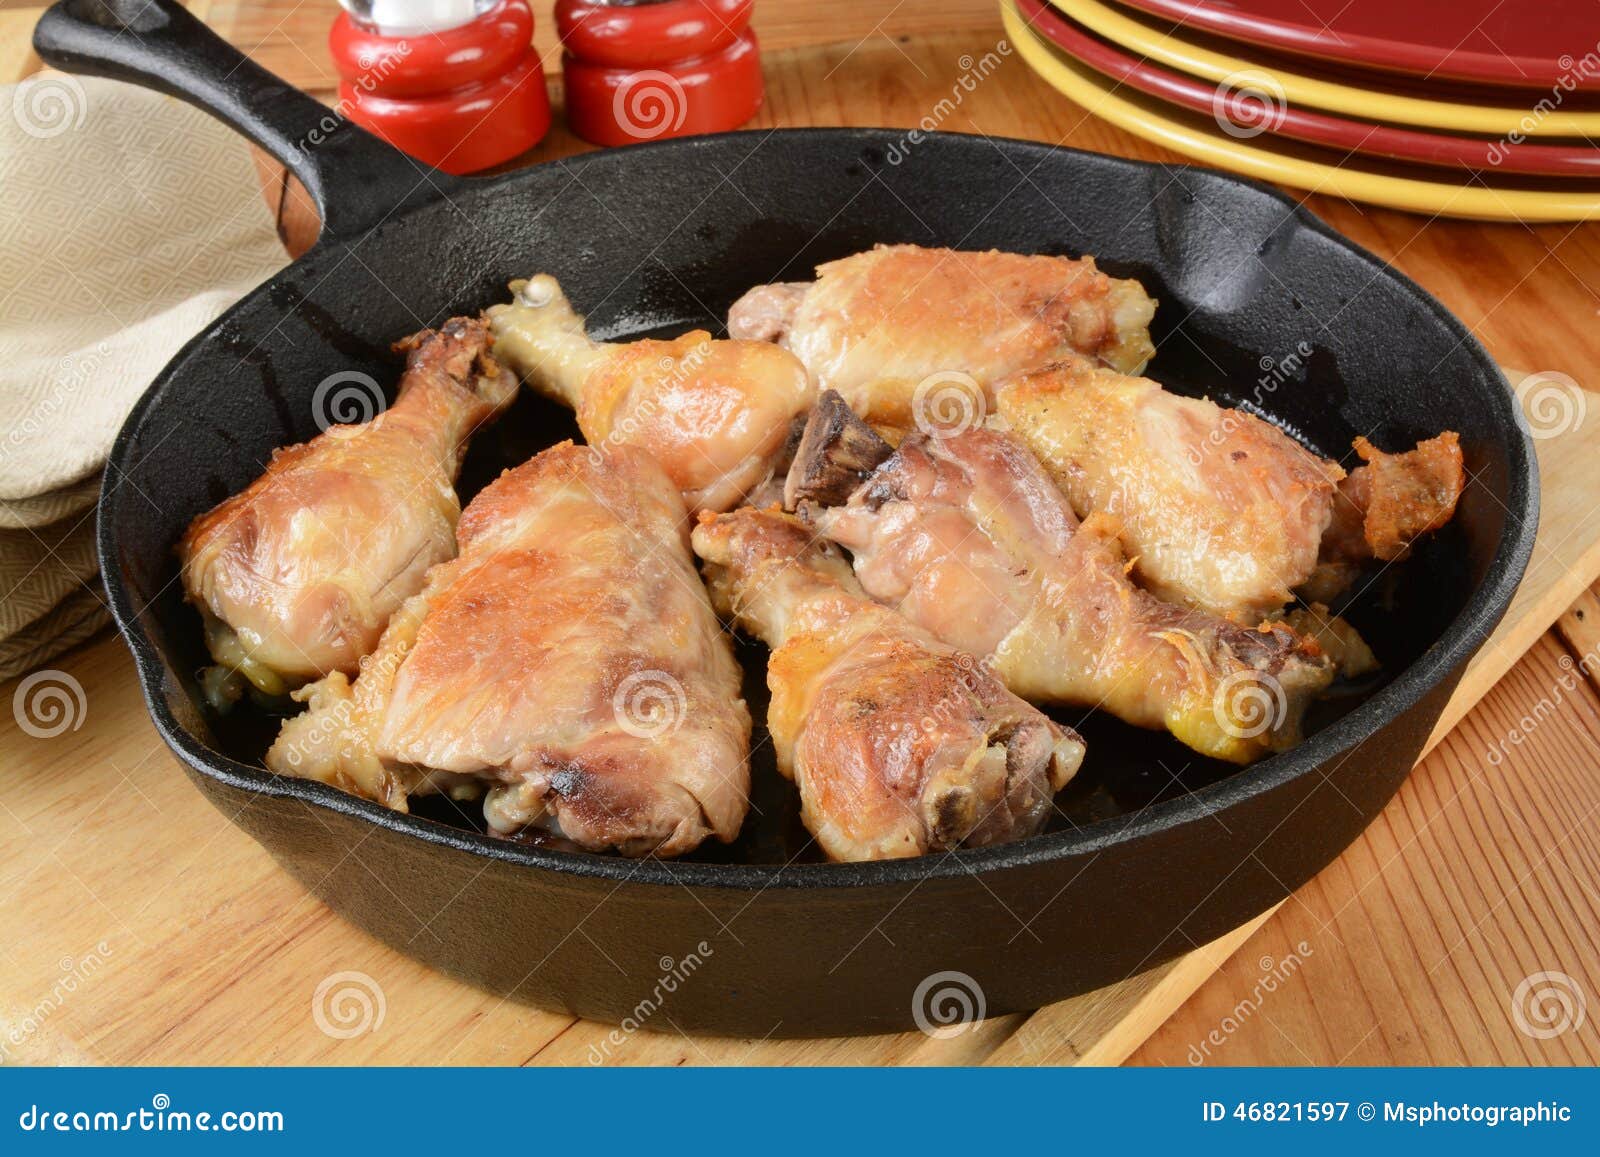 Рецепт домашней курицы на сковороде. Курица на сковороде. Блюда из курицы на сковороде красивые. Сырая курица на сковороде. Обжариваем куриные бёдрышки до золотистого цвета.